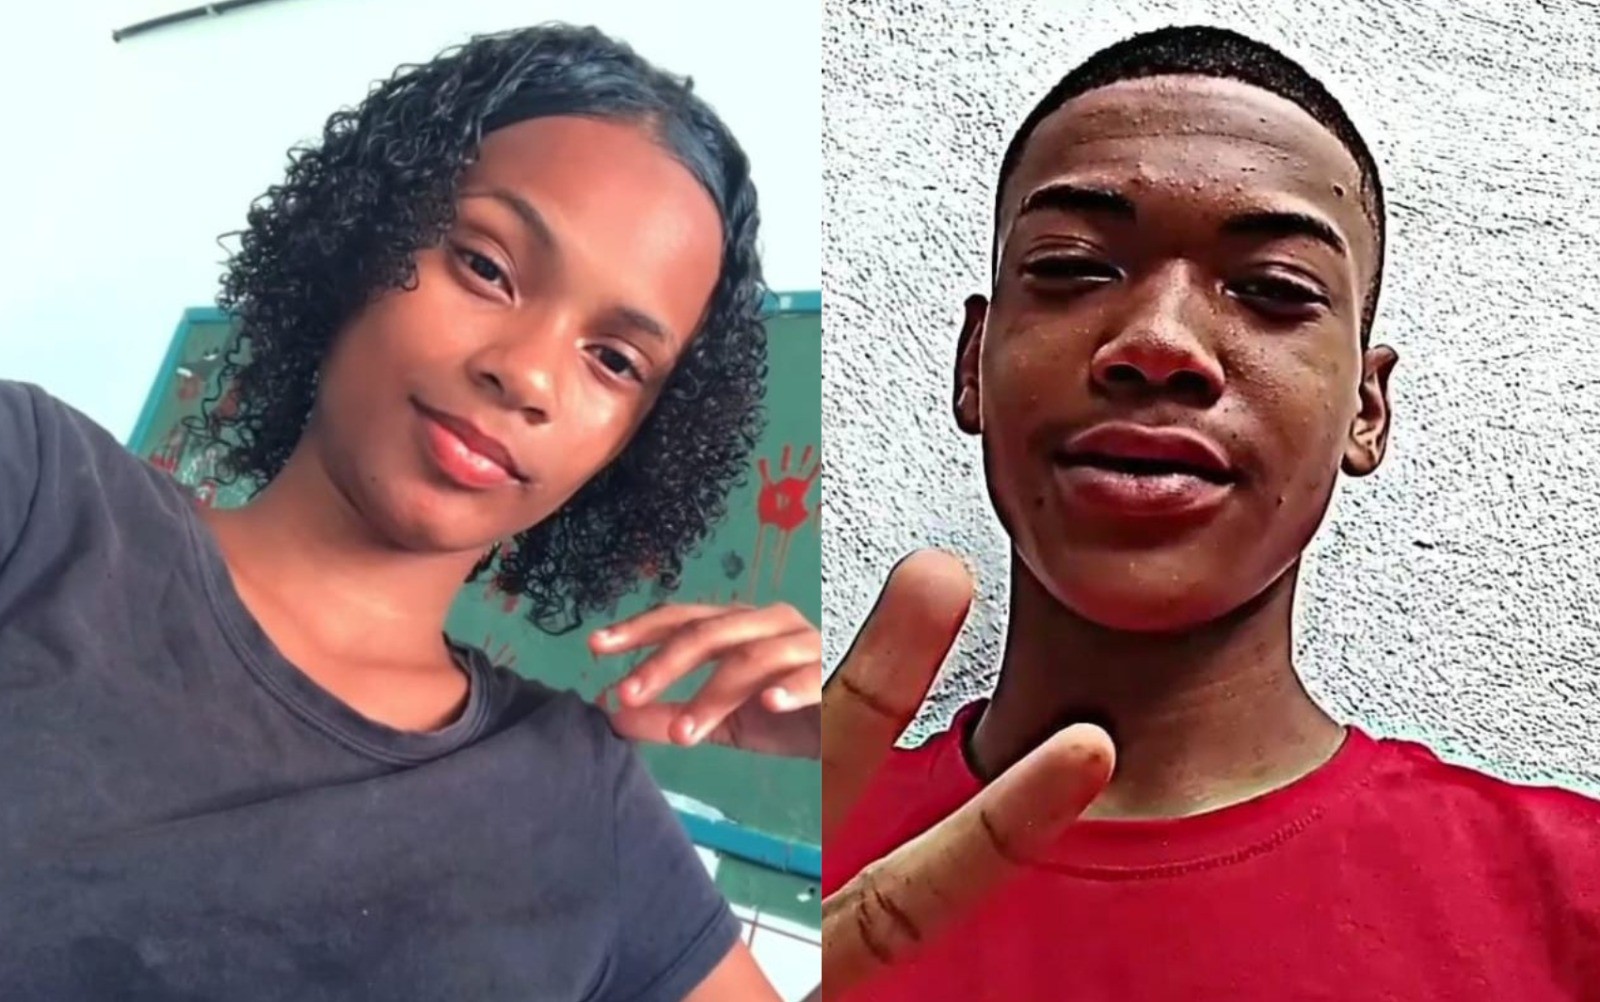 Adolescente de 15 anos é morta a tiros em Salvador; namorado é suspeito de cometer crime